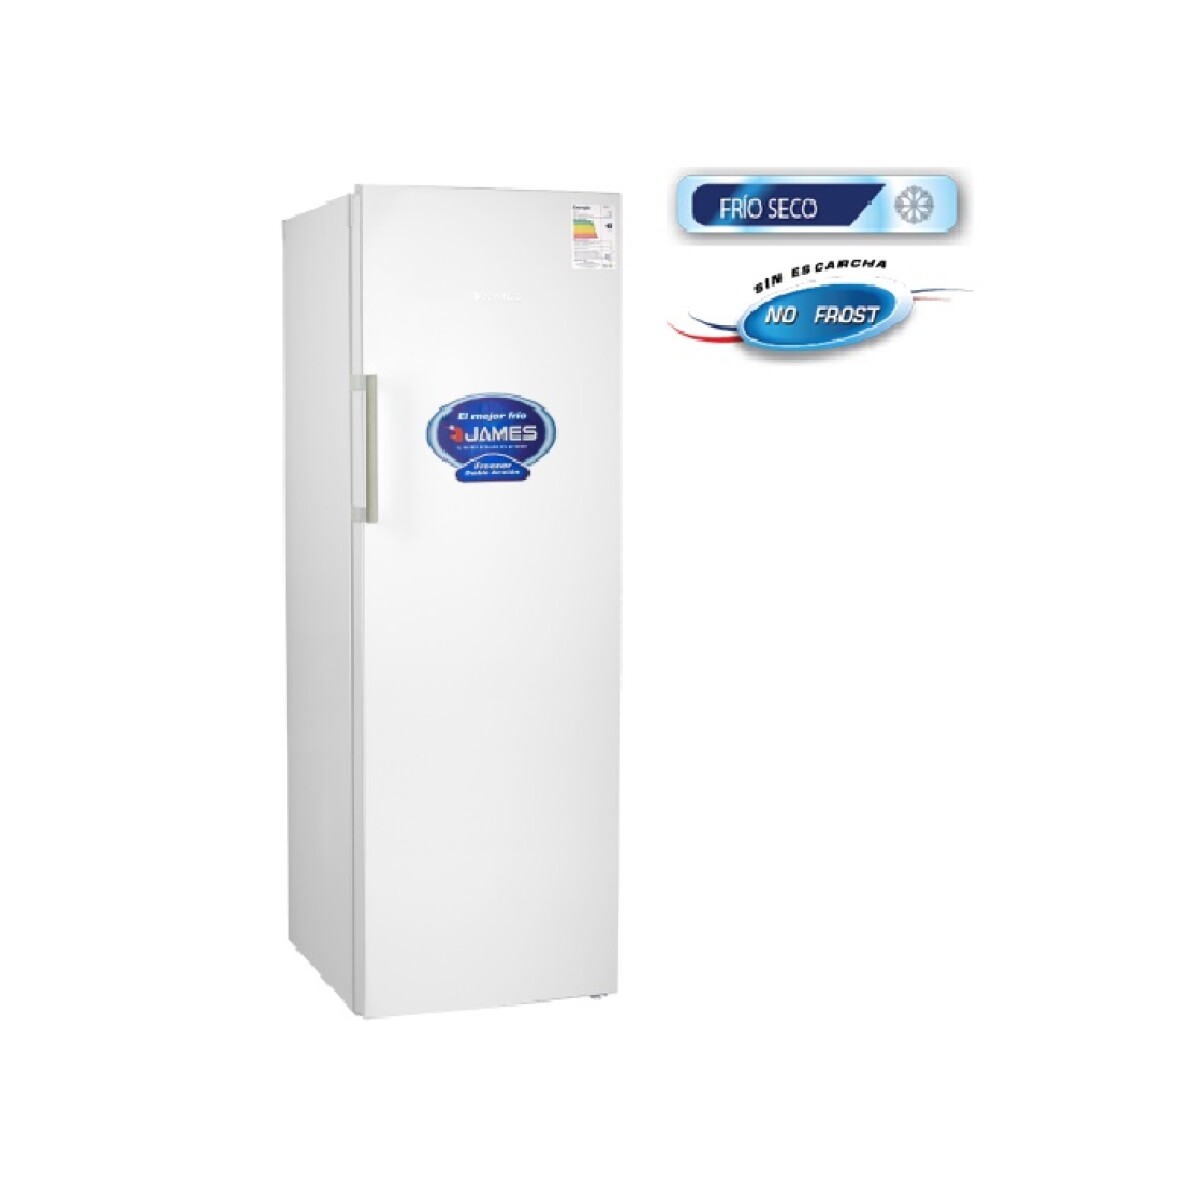 Freezer Vertical James 319 Litros Frio Seco - 42641 - 001 